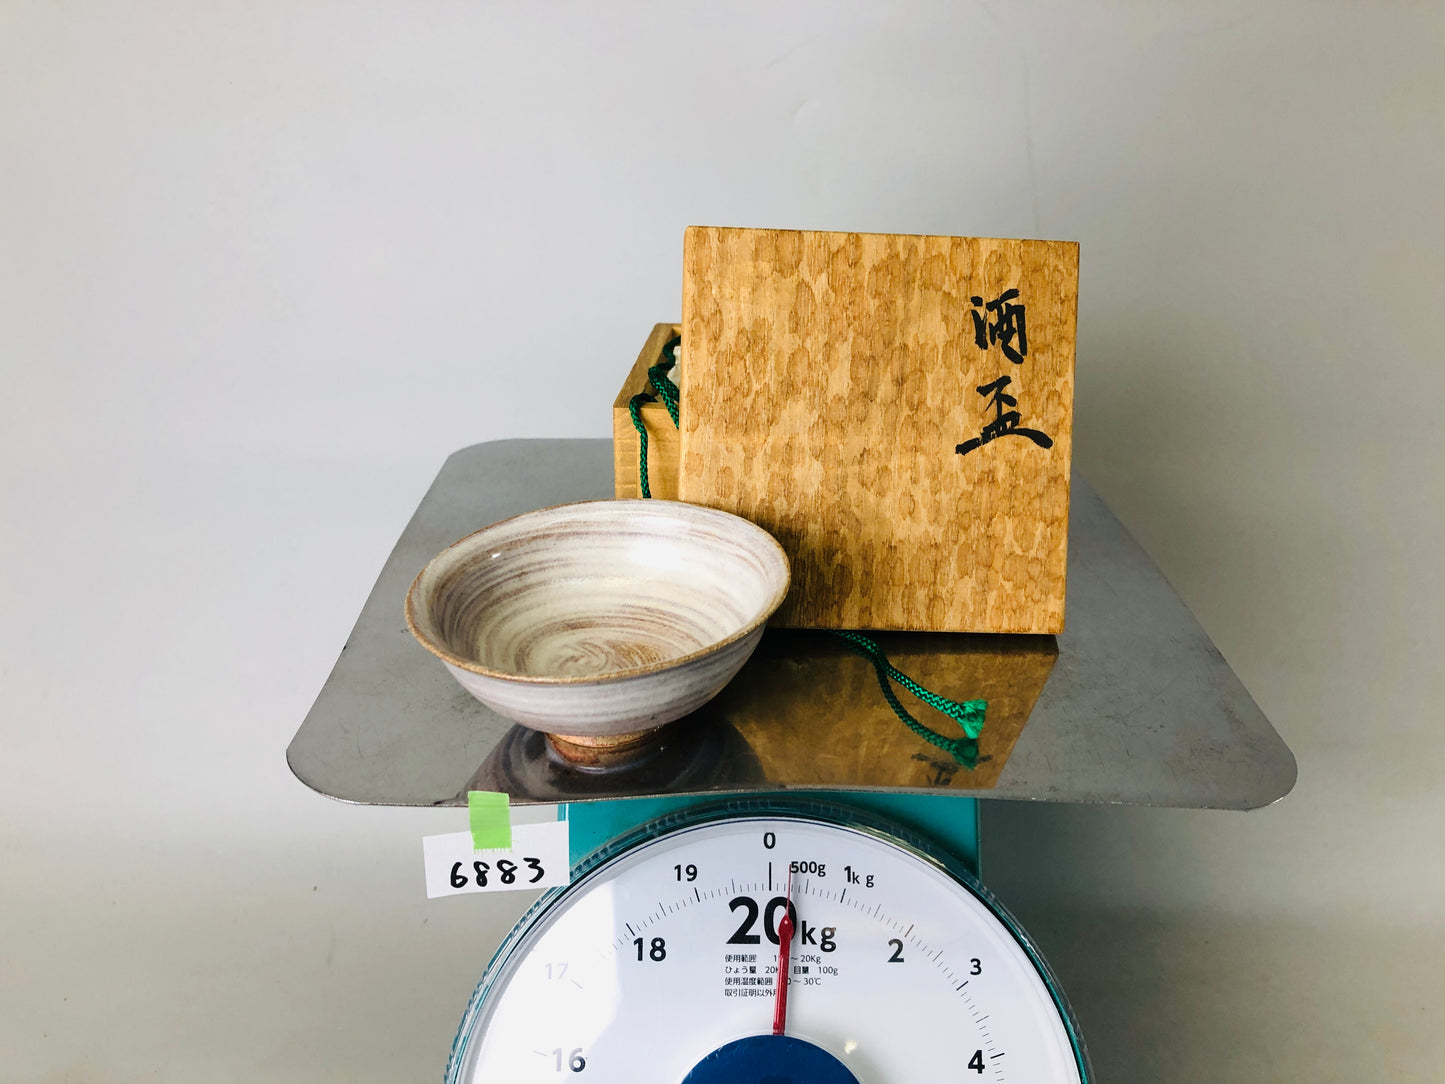 Y6883 [VIDEO] CHAWAN Hakeme brushmark Sake cup signed box Japan antique tableware bowl